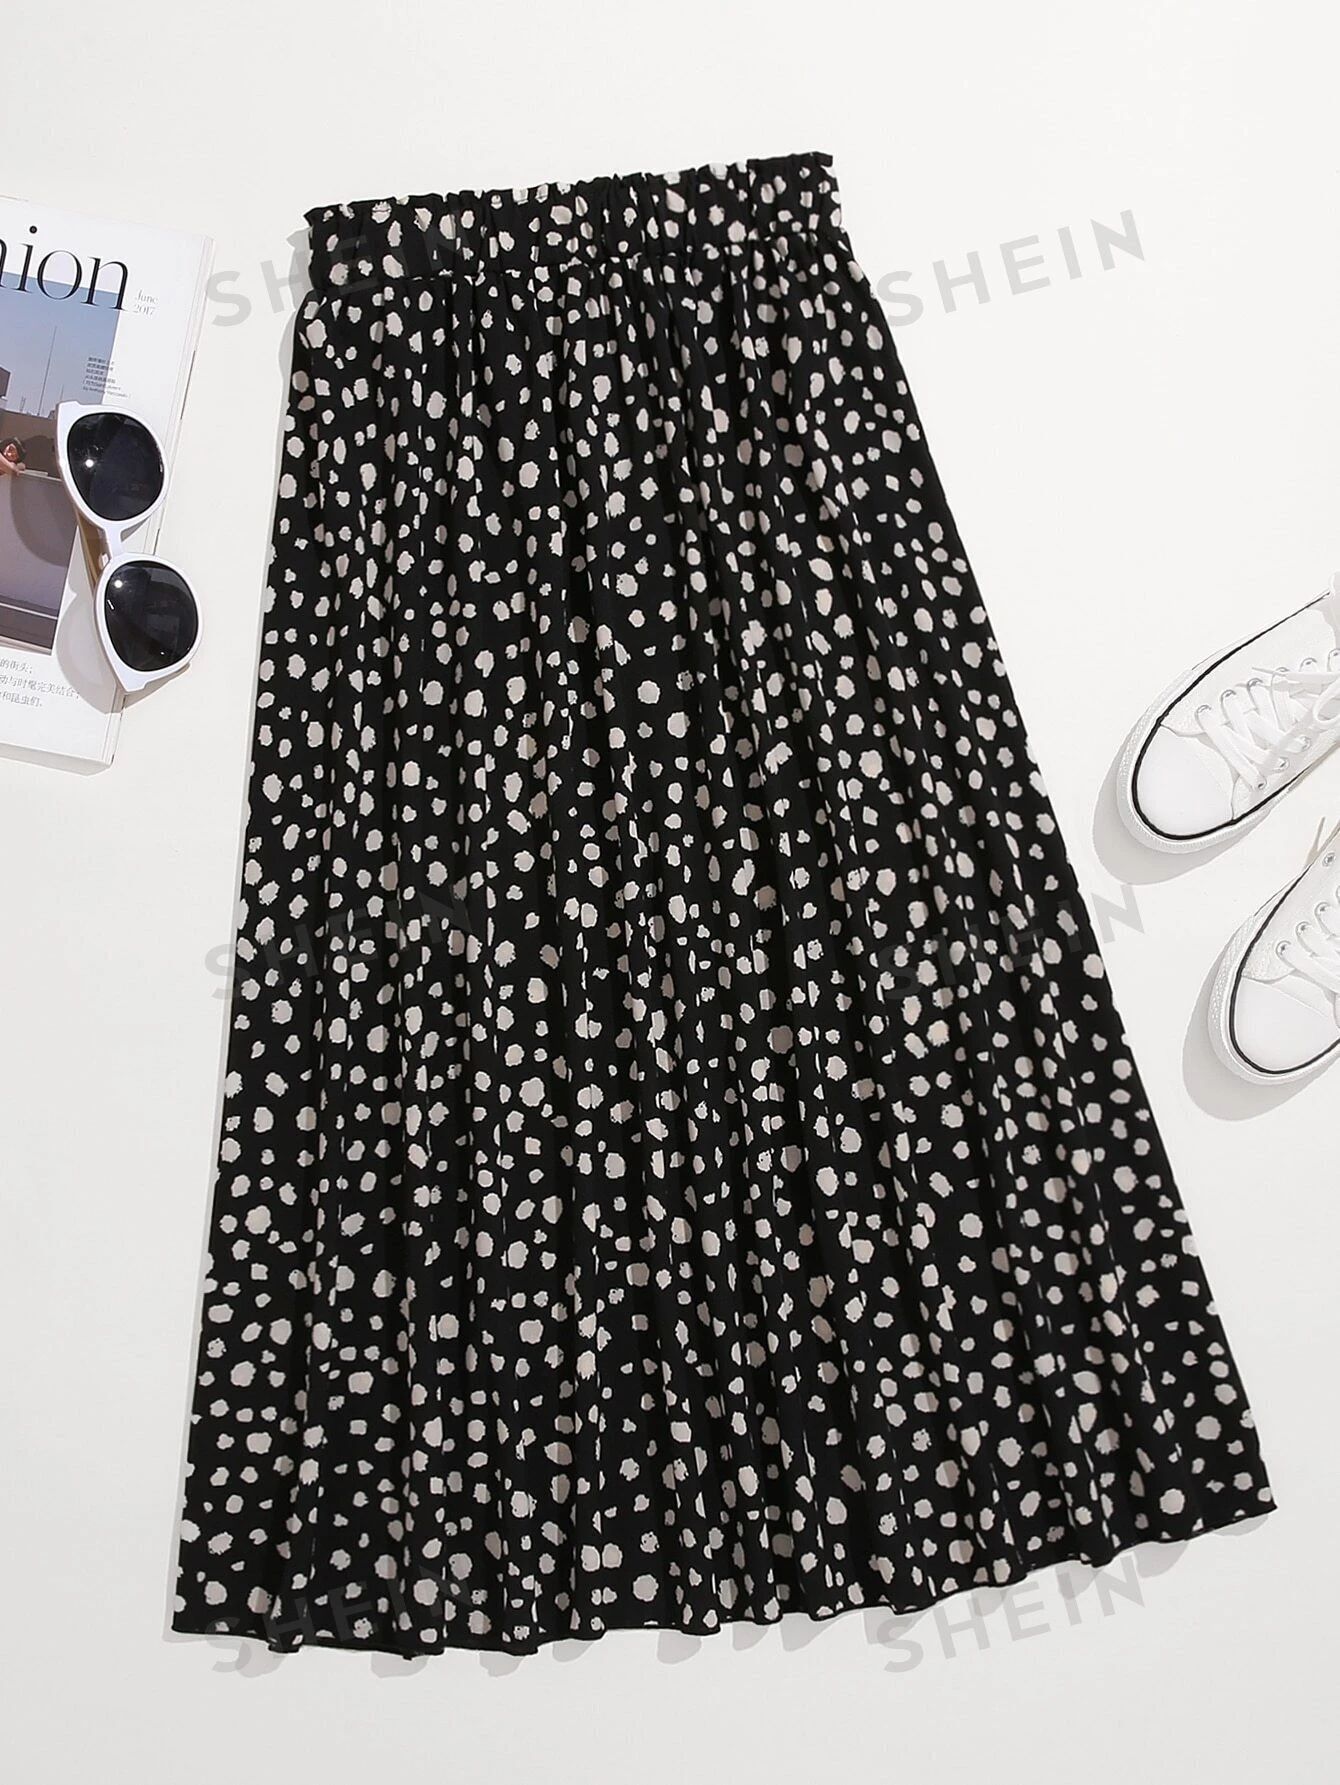 SHEIN LUNE Plus Allover Print A-line Skirt | SHEIN